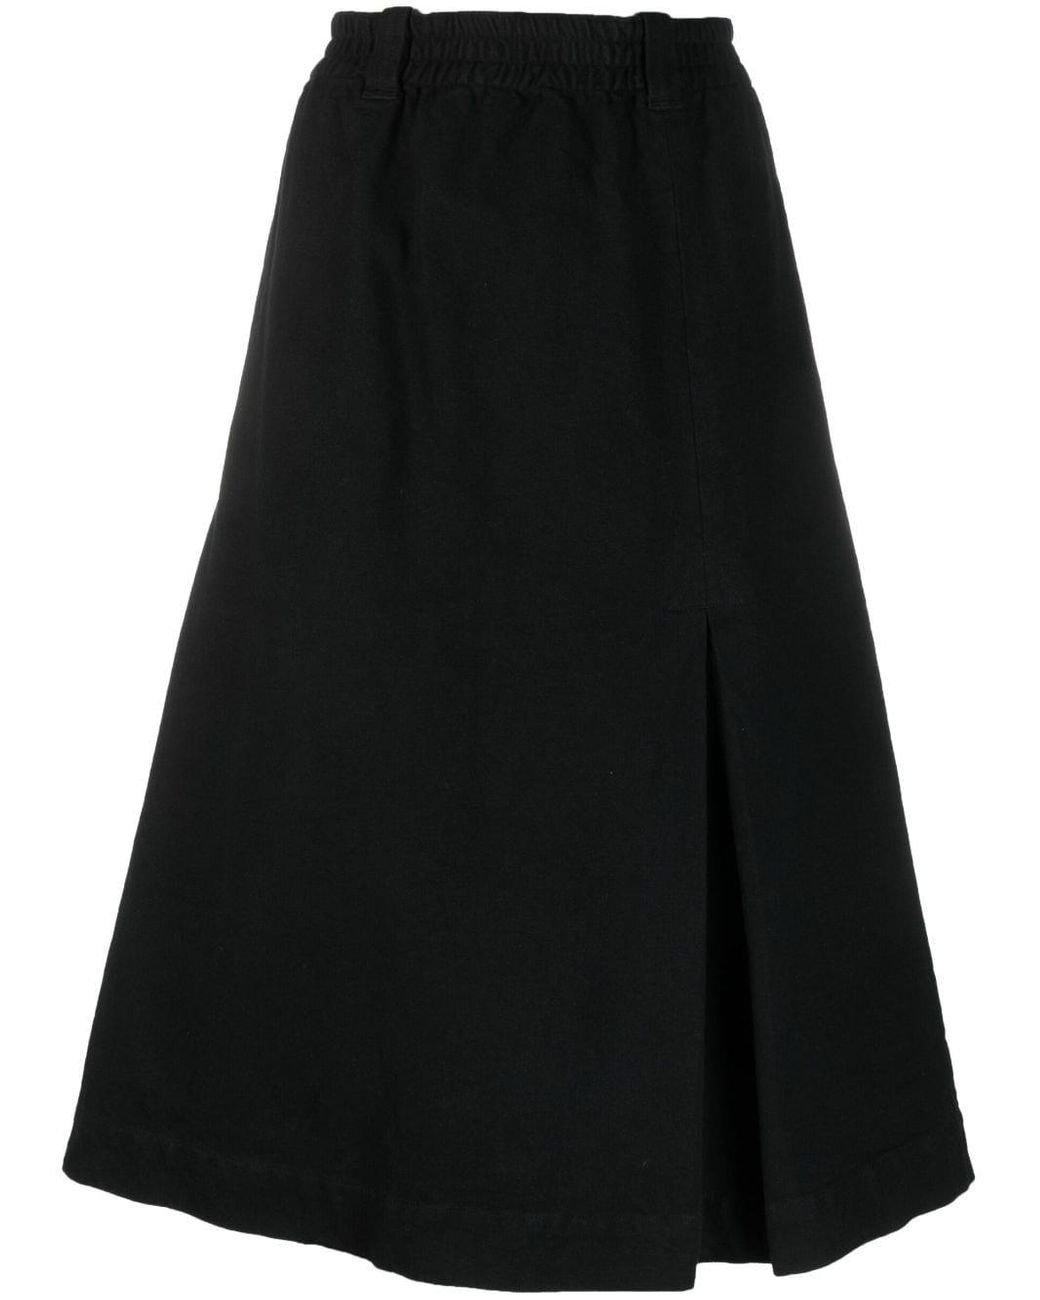 Margaret Howell A-line Box-pleat Midi Skirt in Black | Lyst UK